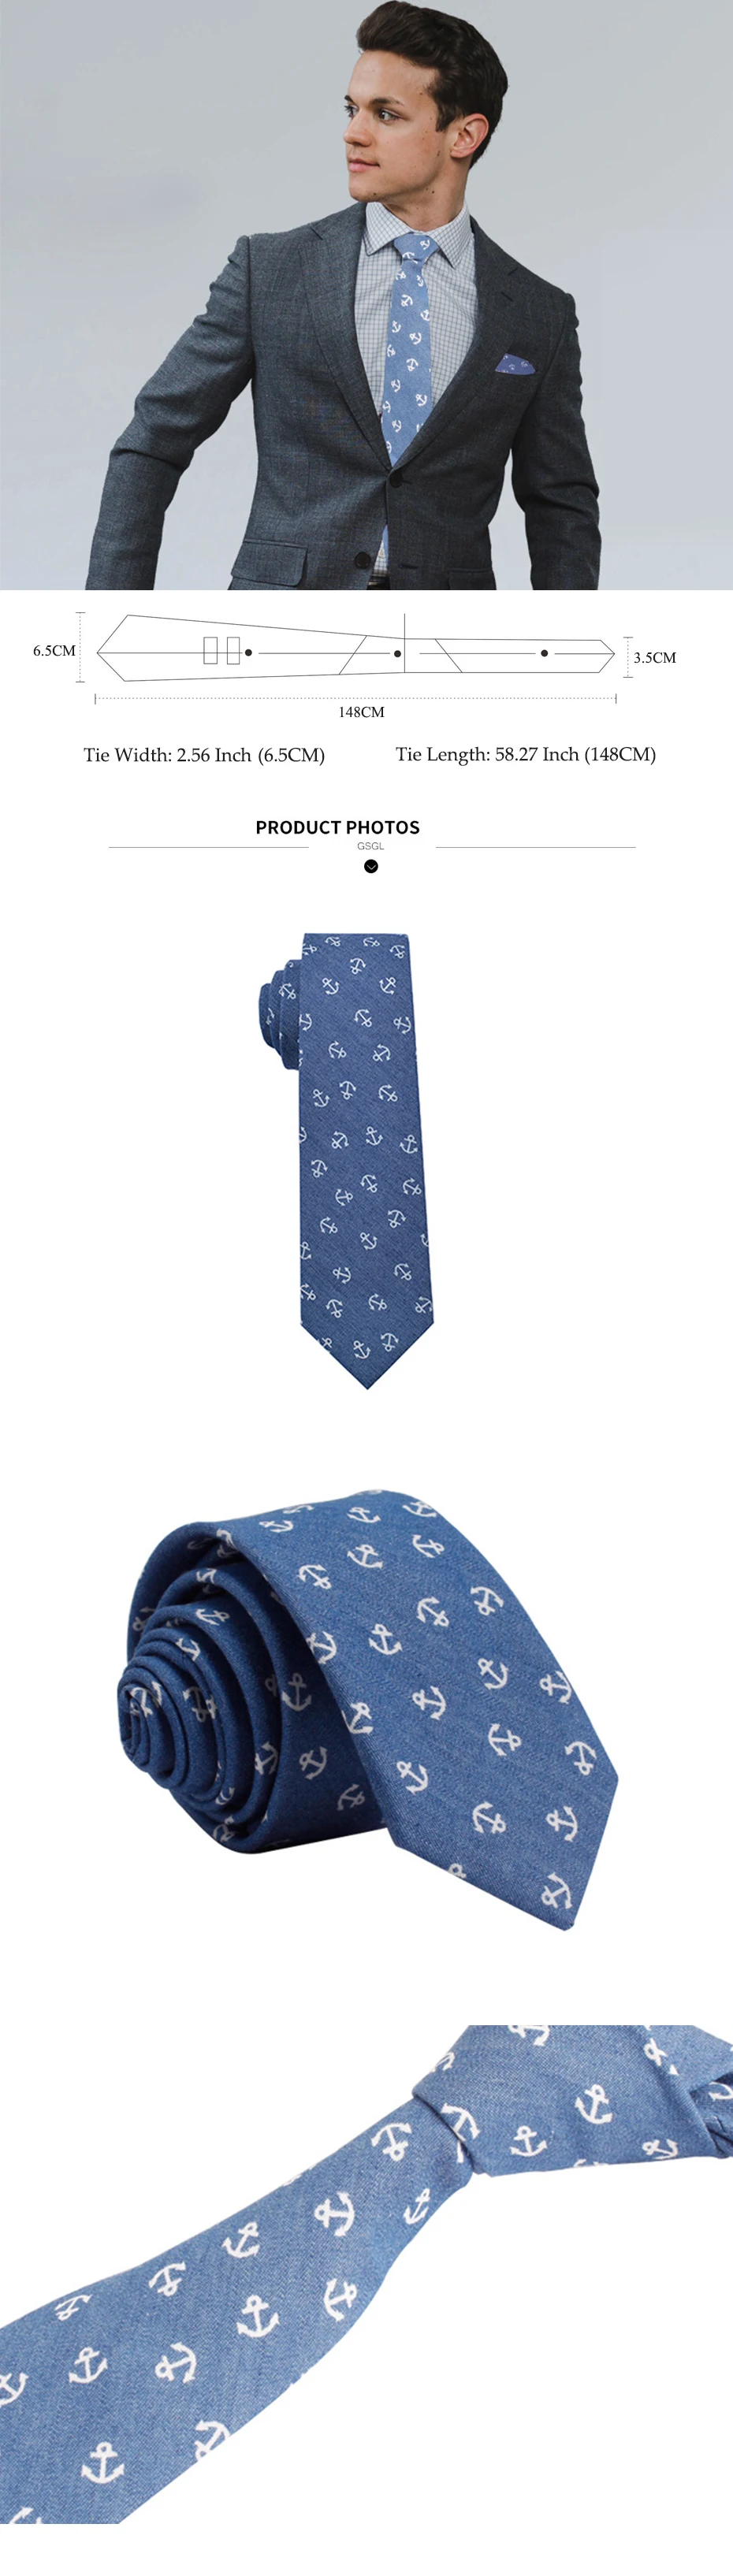 Новый Для мужчин печать шеи мужские галстуки Повседневное хлопок тонкий галстук Gravata узкие Свадебные деловые галстуки новый дизайн